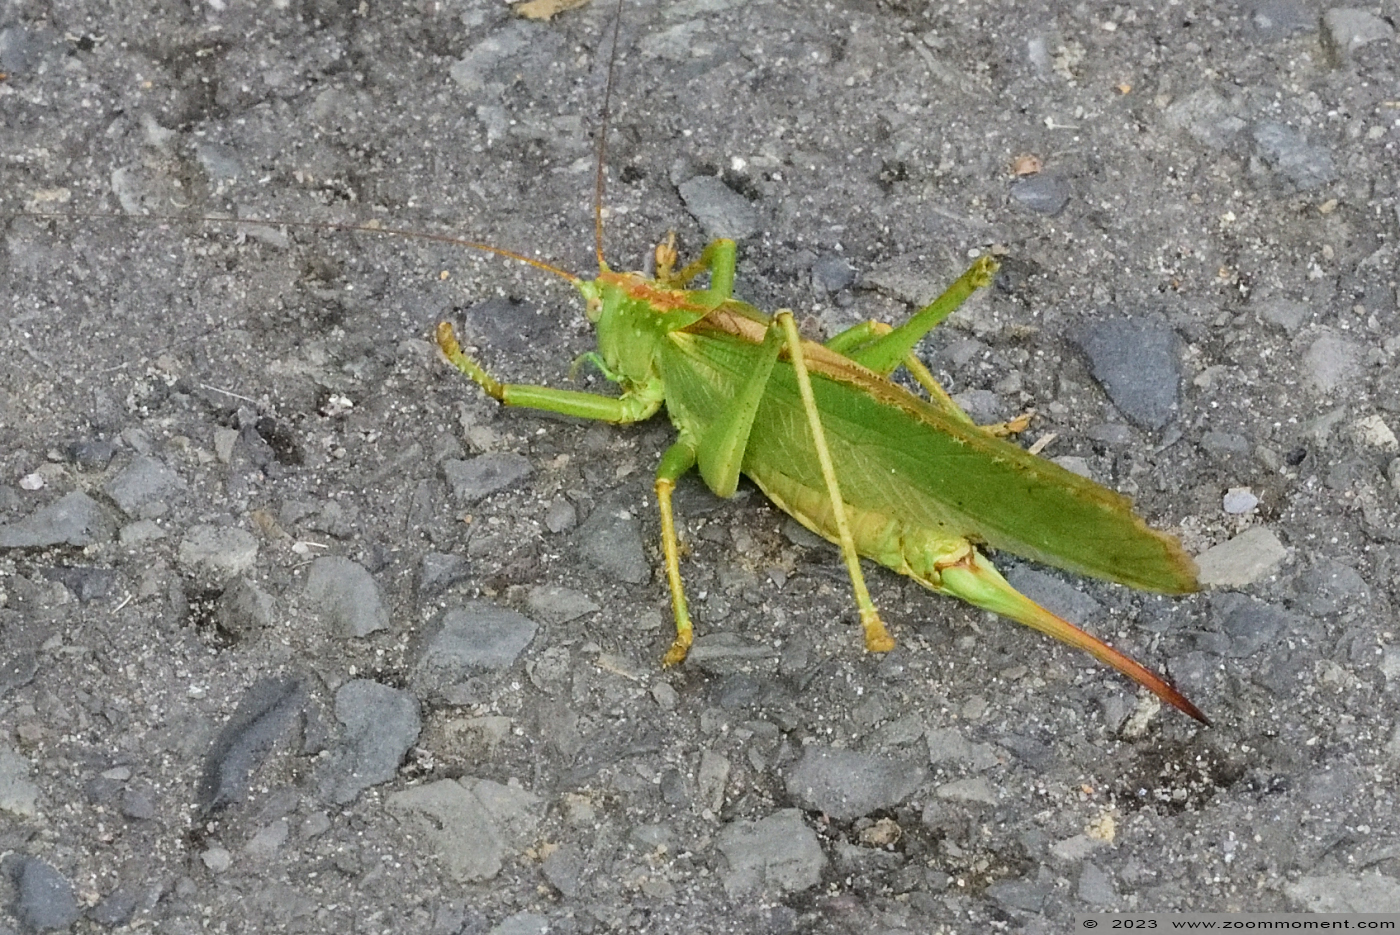 sprinkhaan grasshopper
Trefwoorden: Tierpark Donnersberg Germany sprinkhaan grasshopper